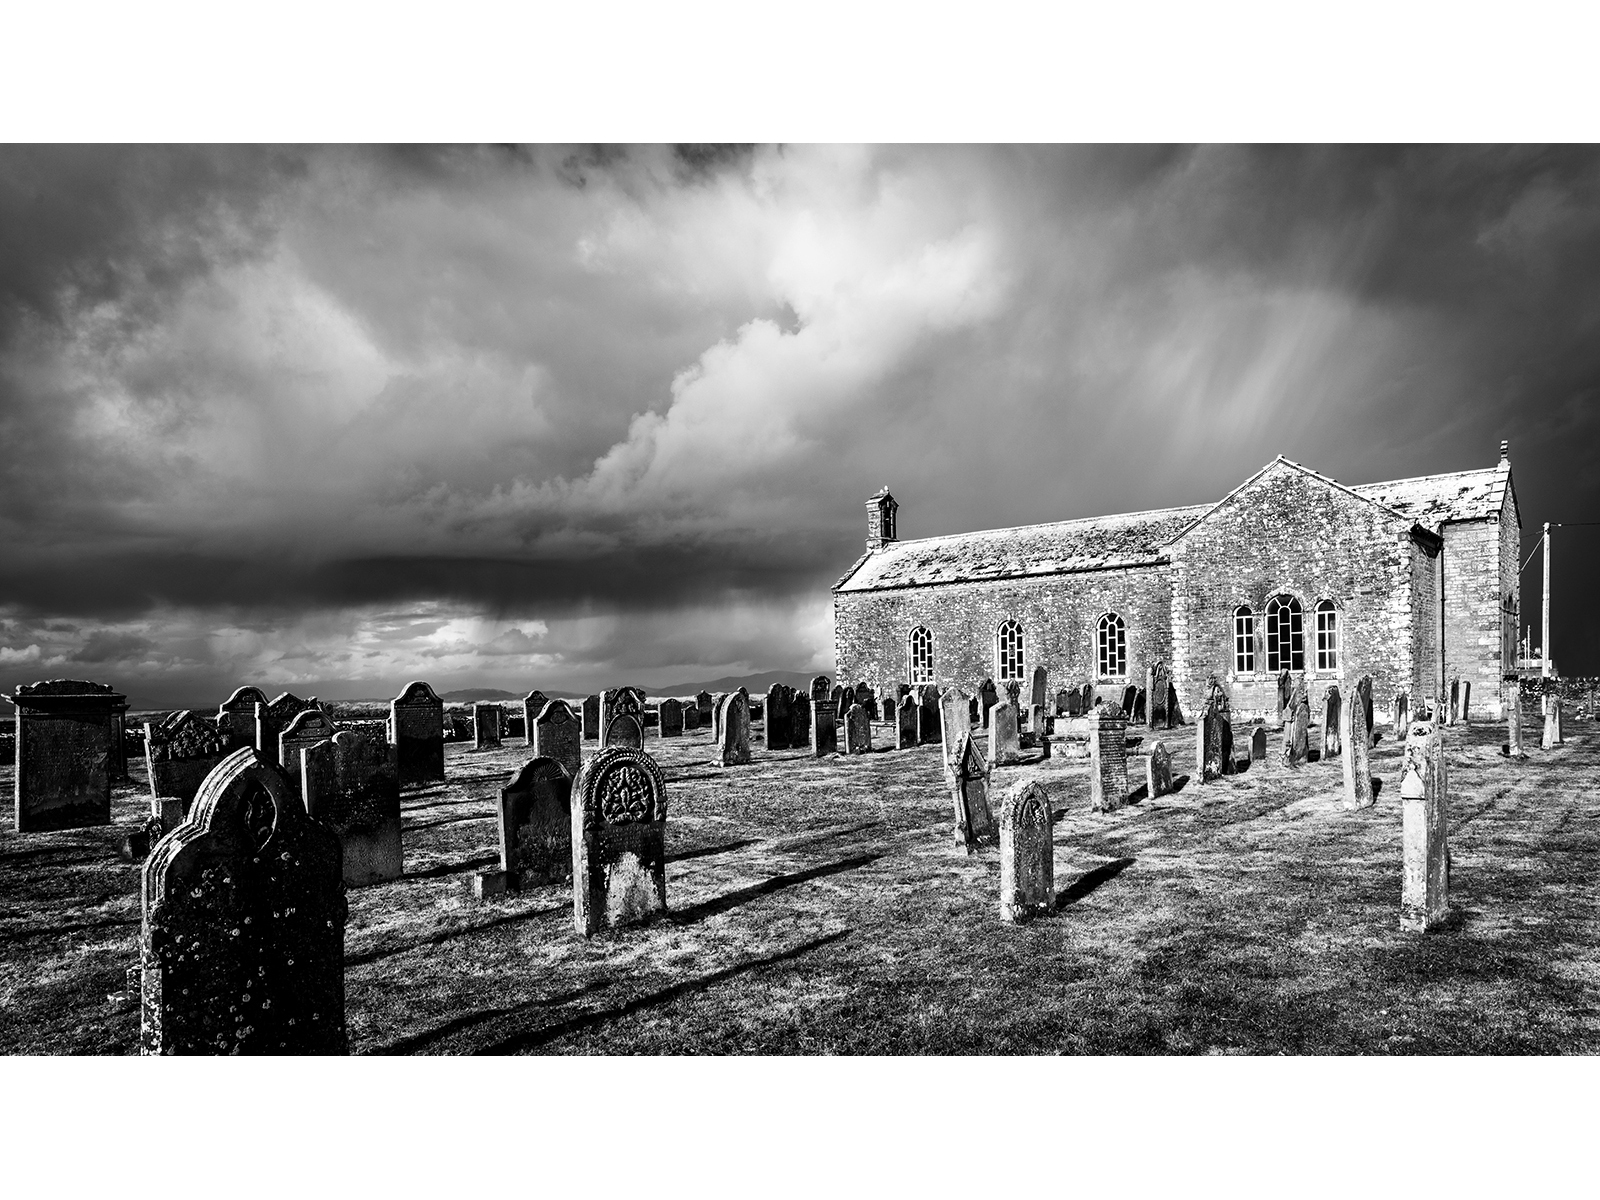 Chapel and a brewing storm - Phil Barnes.jpg